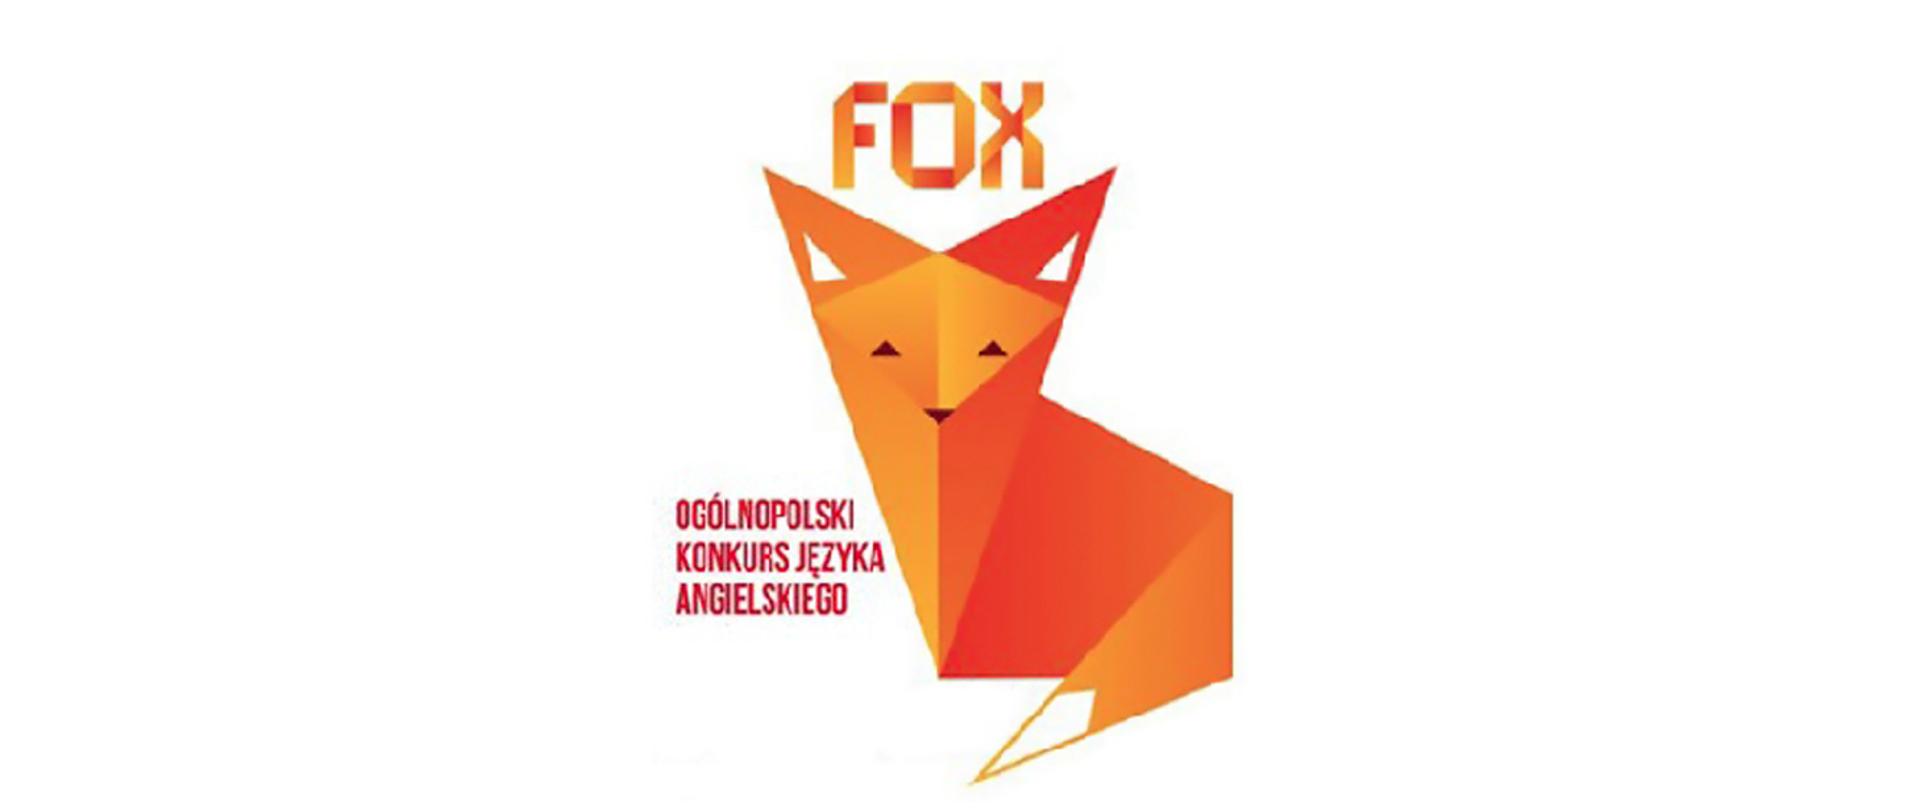 Logo Ogólnopolskiego Konkursu Języka Angielskiego FOX w formie lisa.